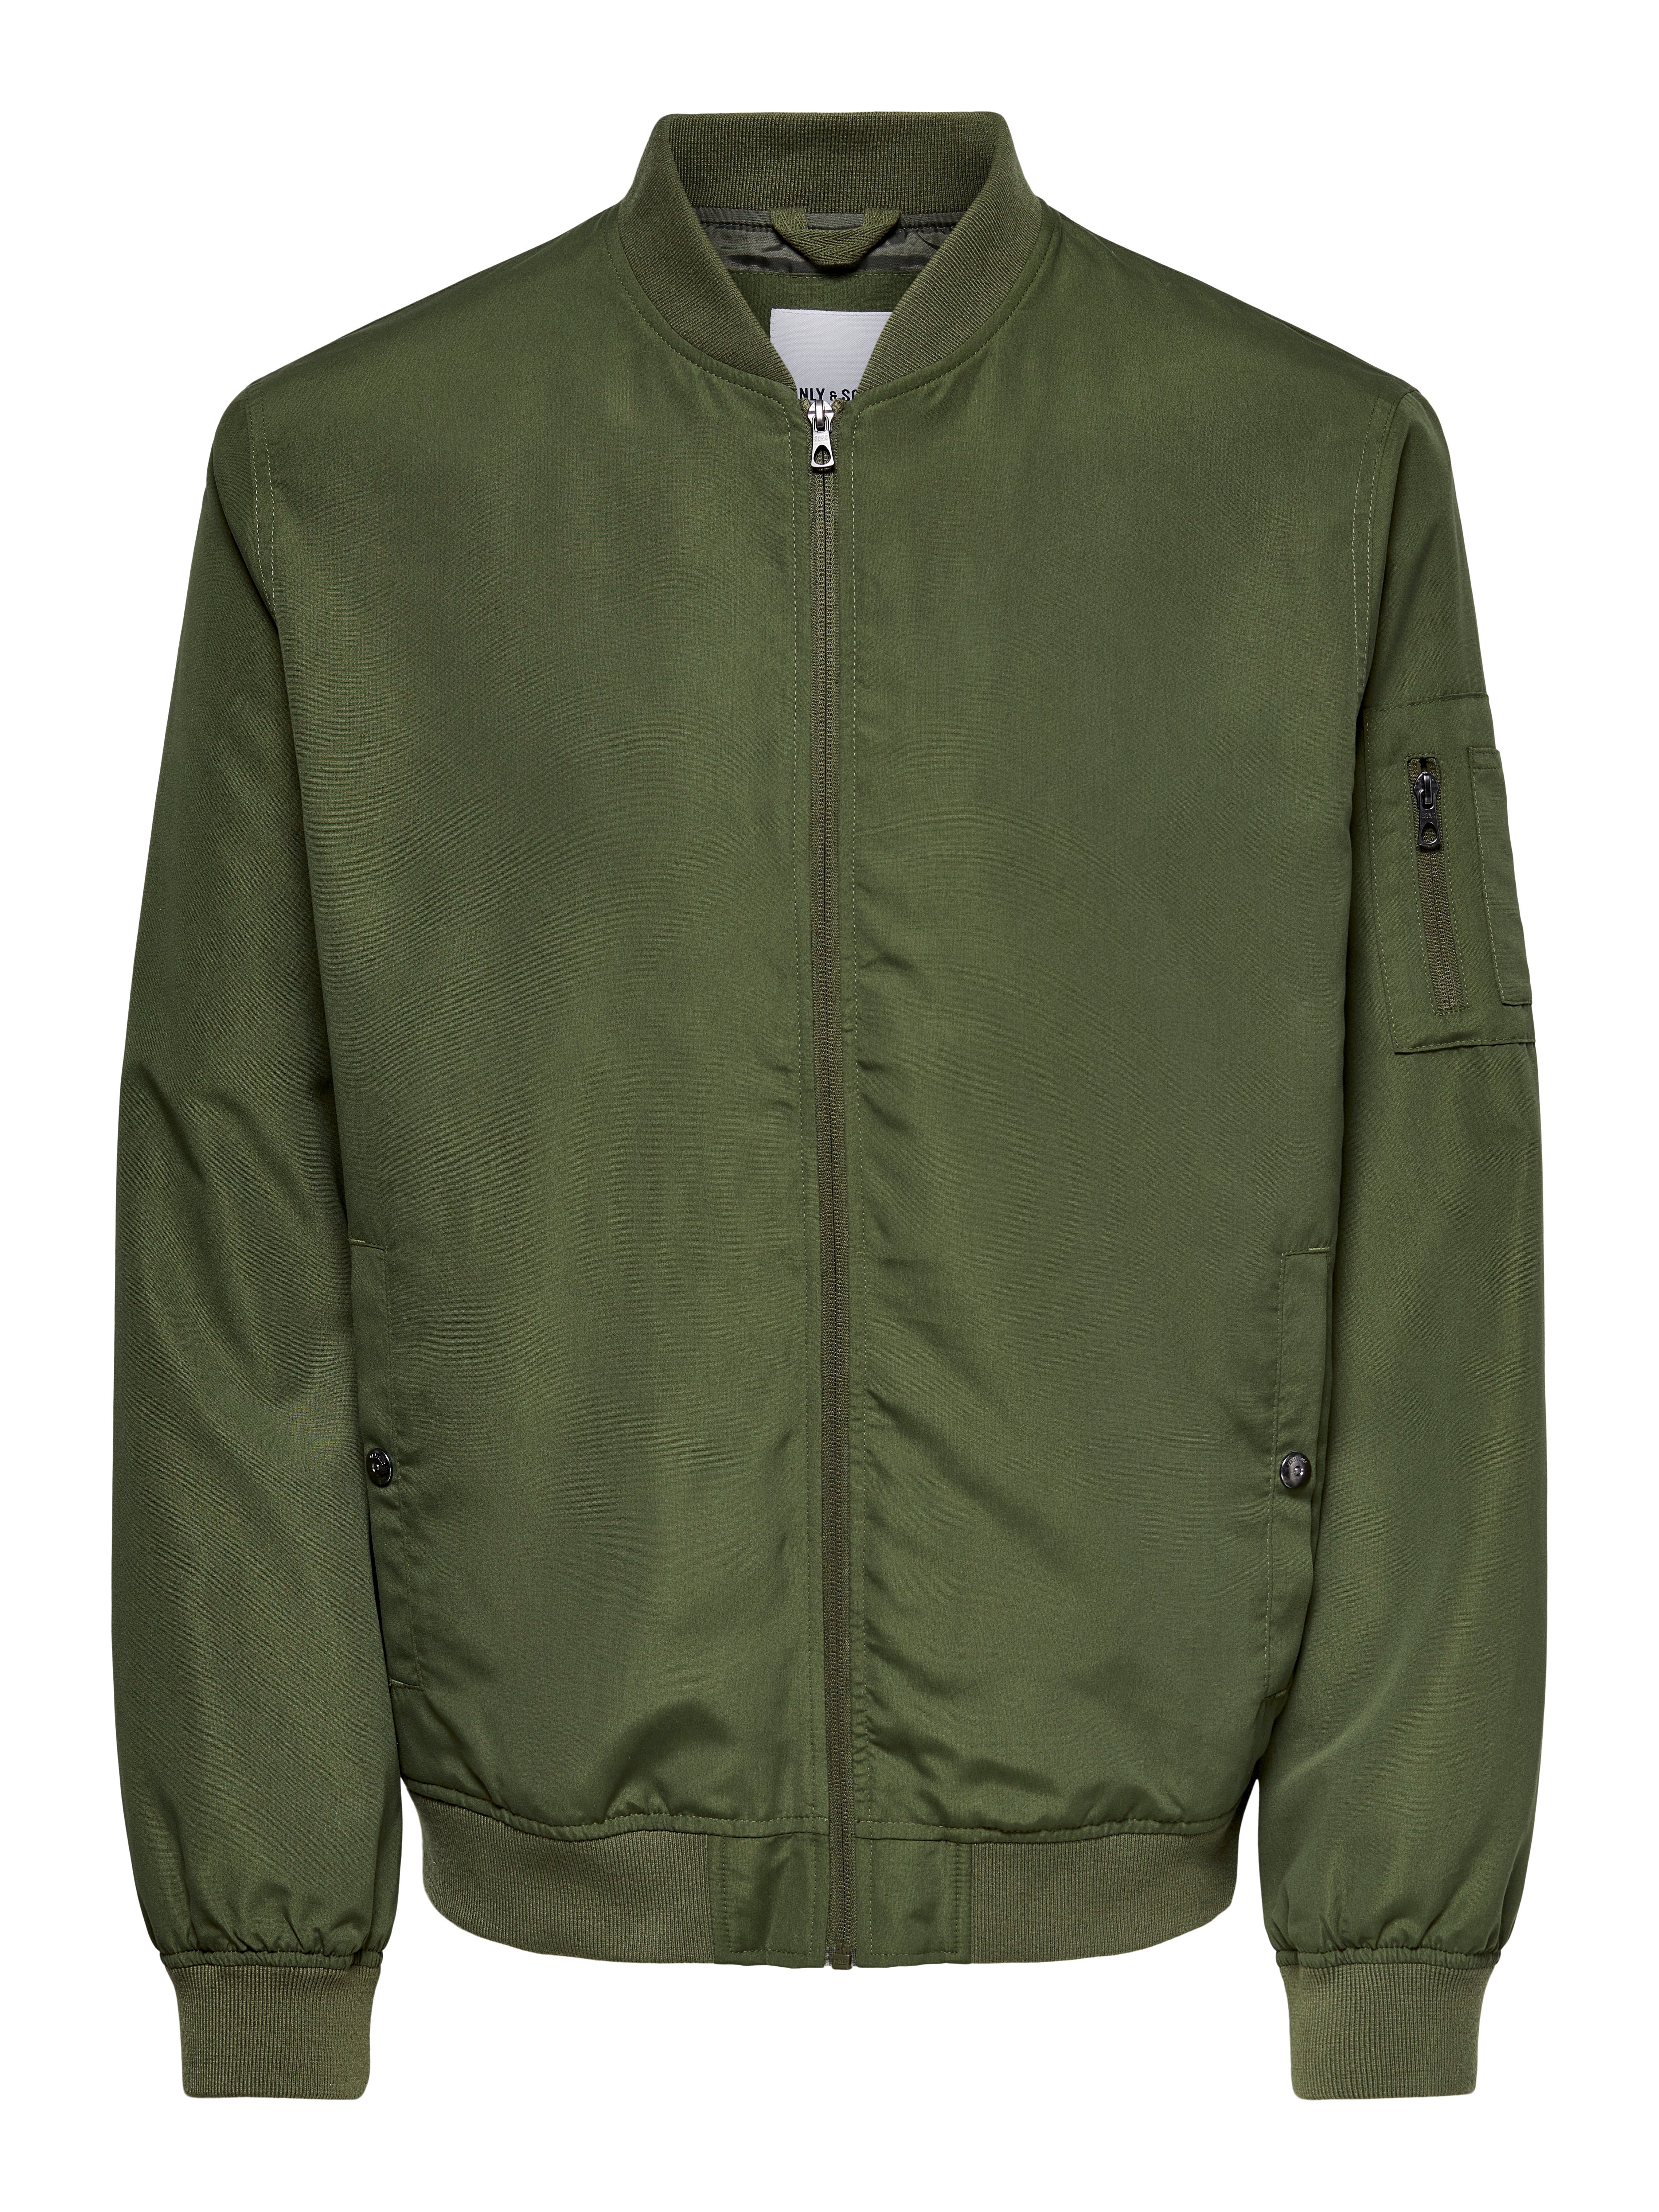 Full Sleeve Fleece Olive Green Color Plain Jacket – TRIPR